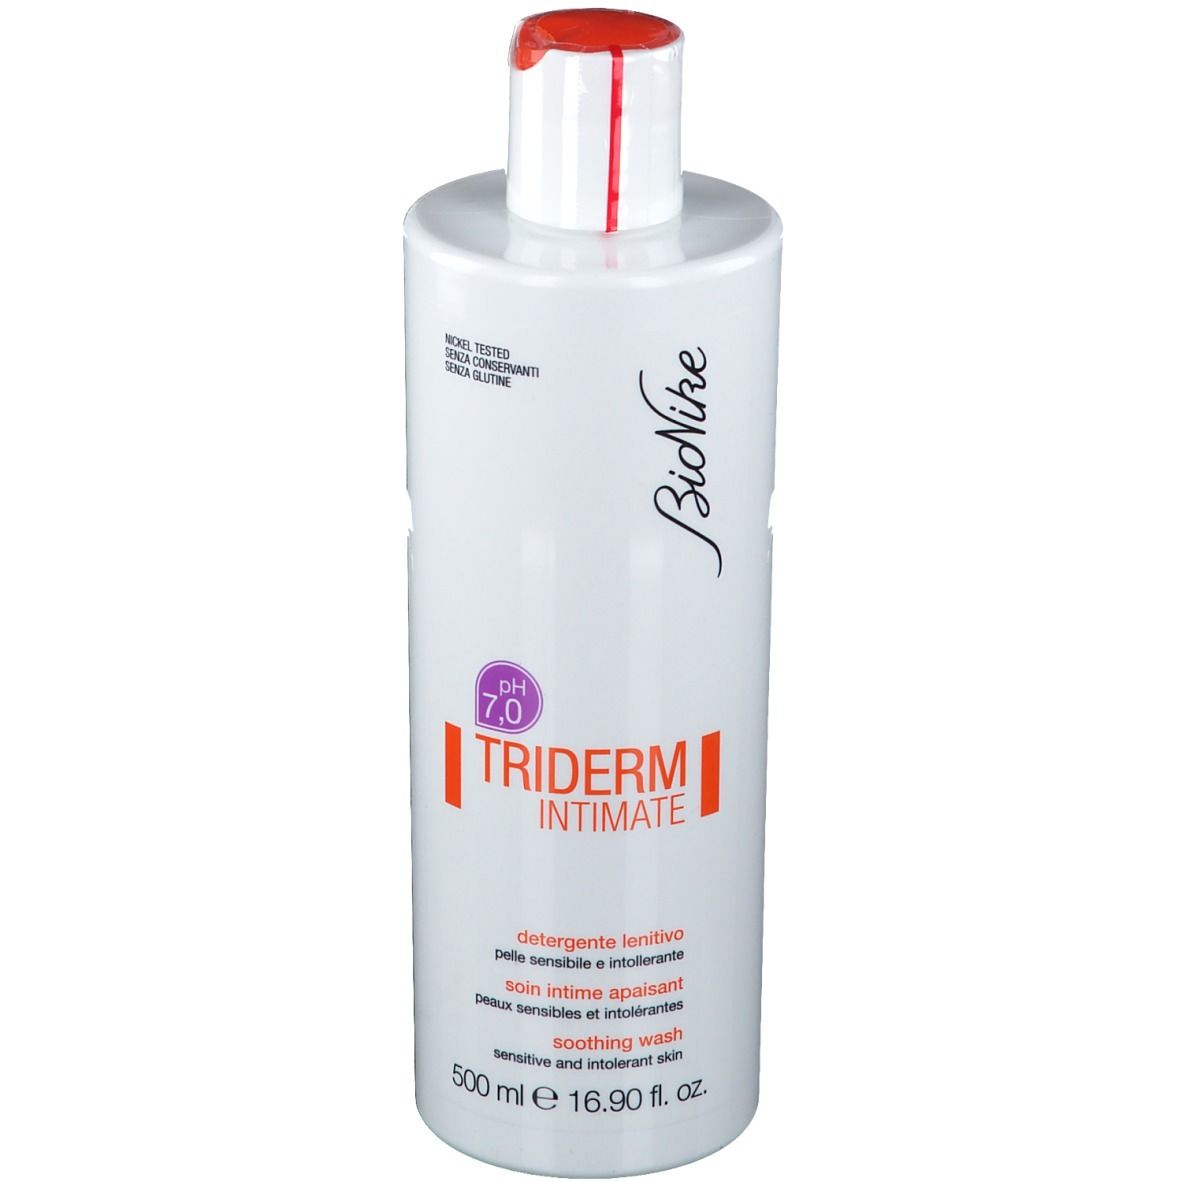 BioNike Triderm Intimate Detergente Lenitivo pH 7.0